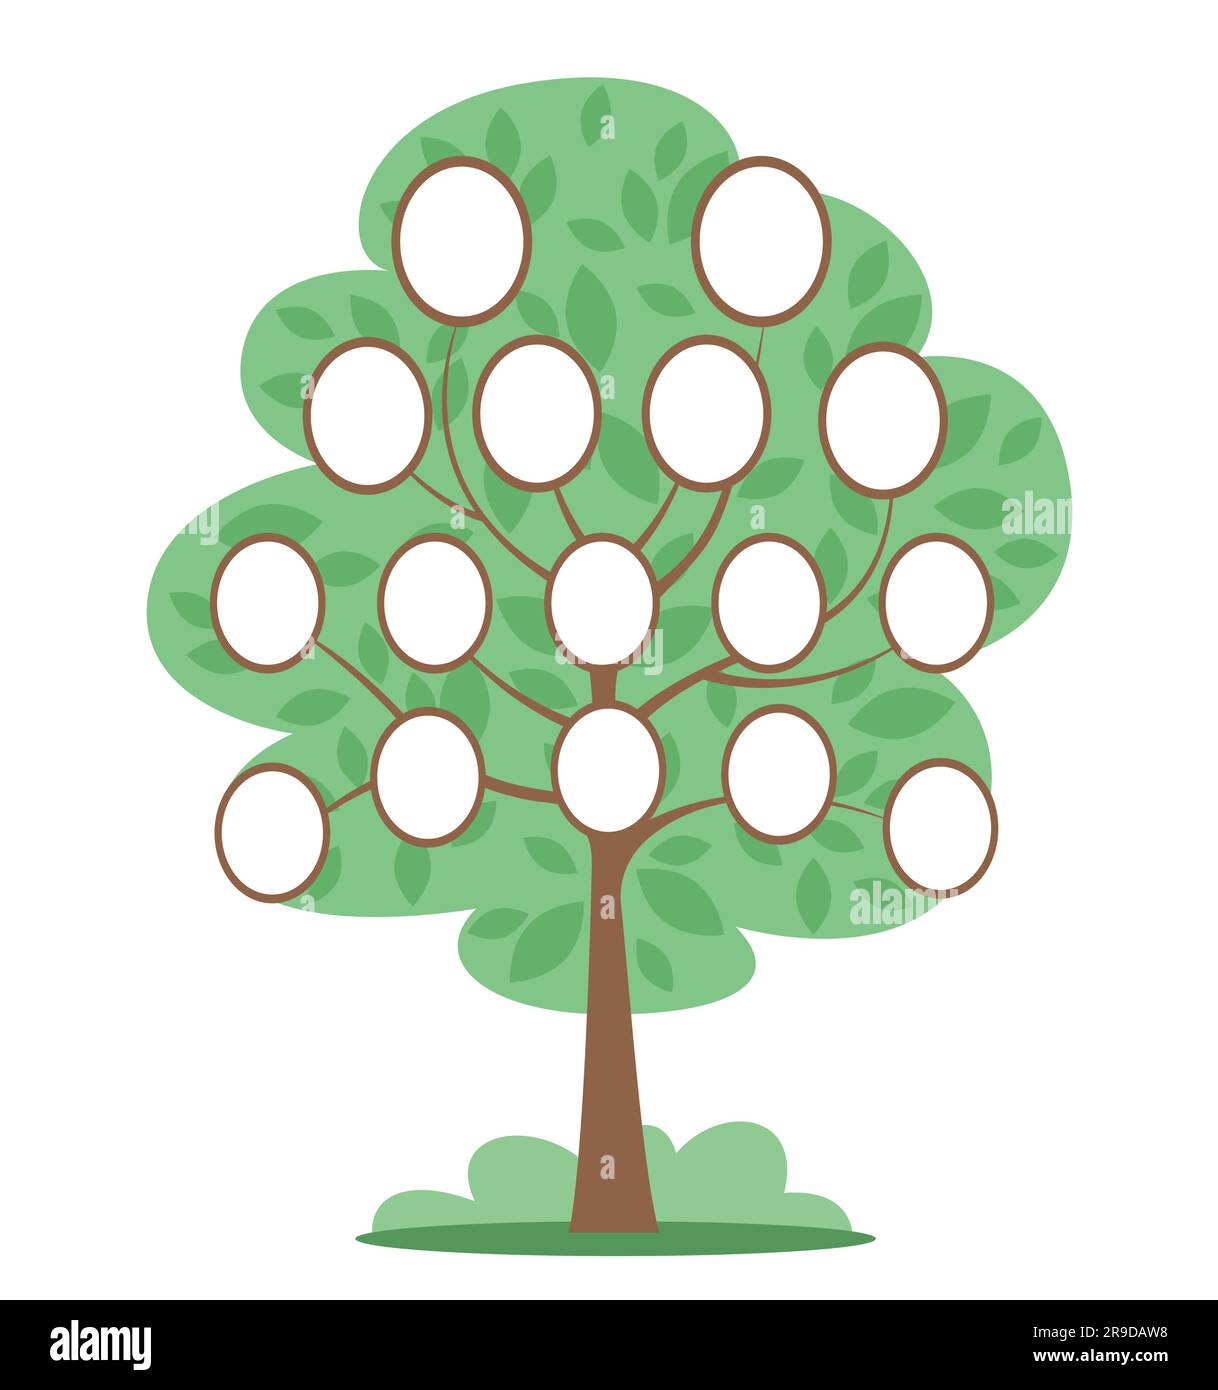 Marco de árbol genealógico - Apps en Google Play